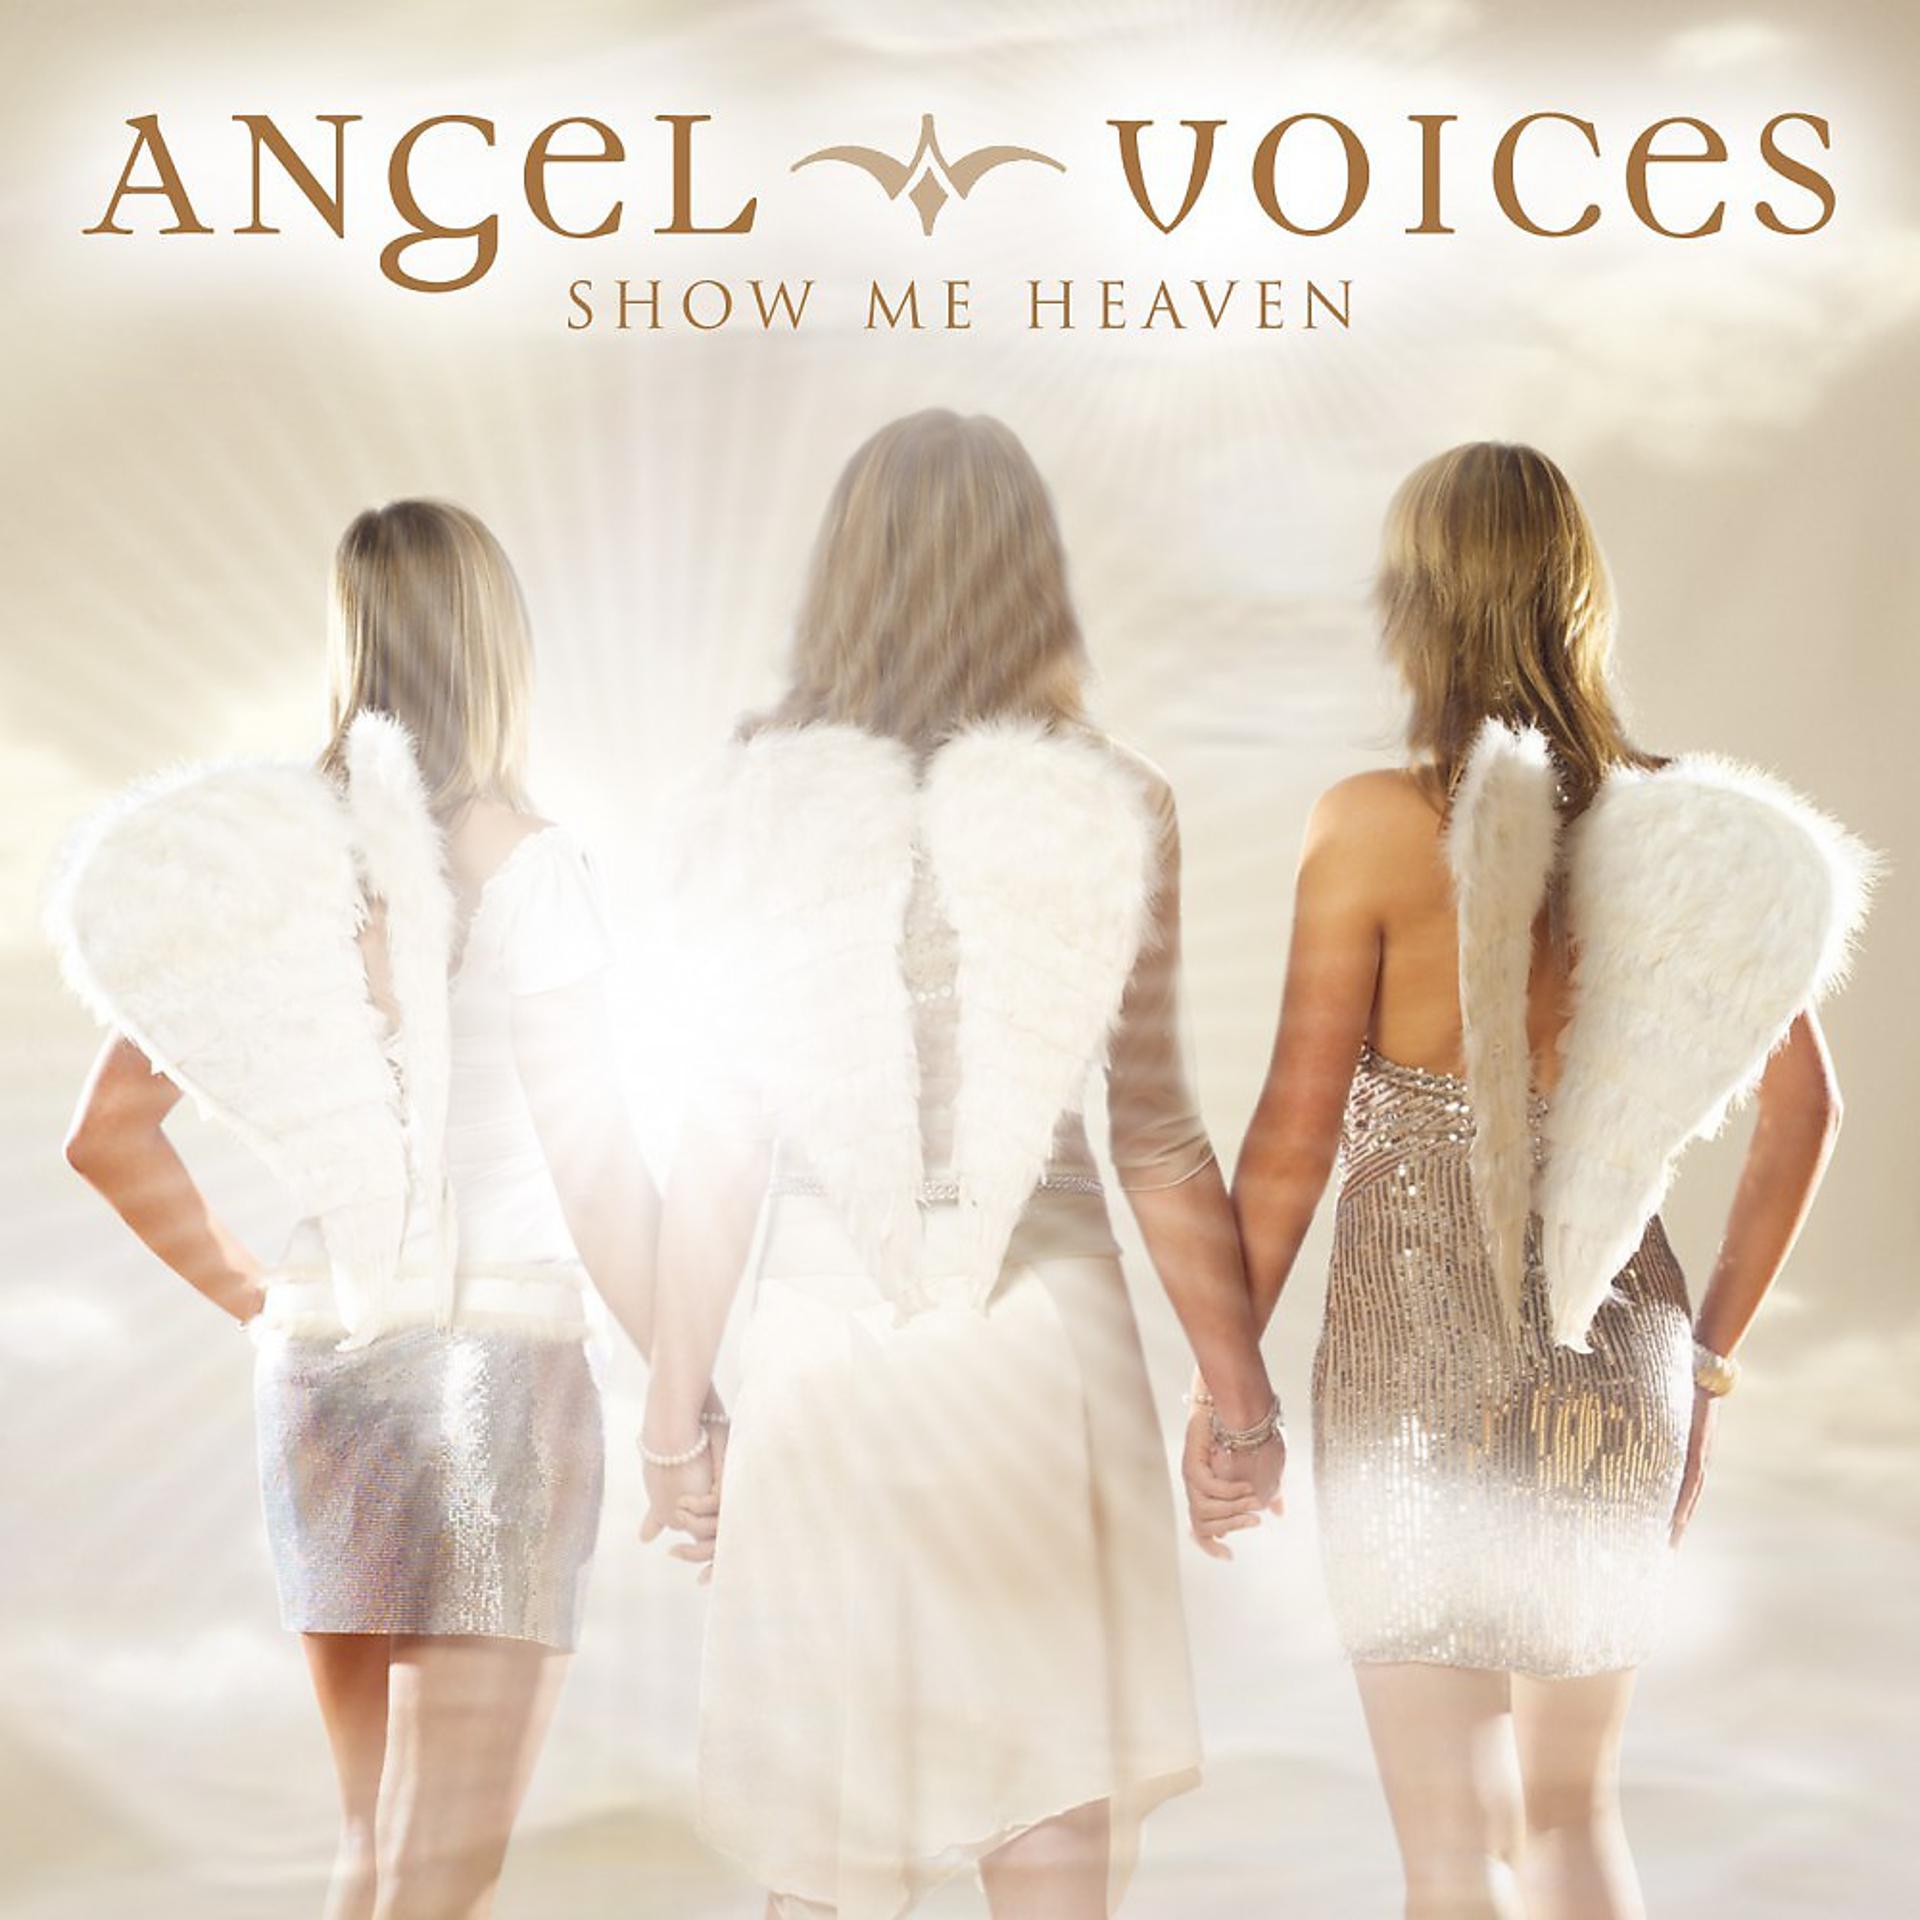 Voices слушать. Angel Voice. Angelic Voices альбом. Рок Angelic Voices альбом. Песня Angel.